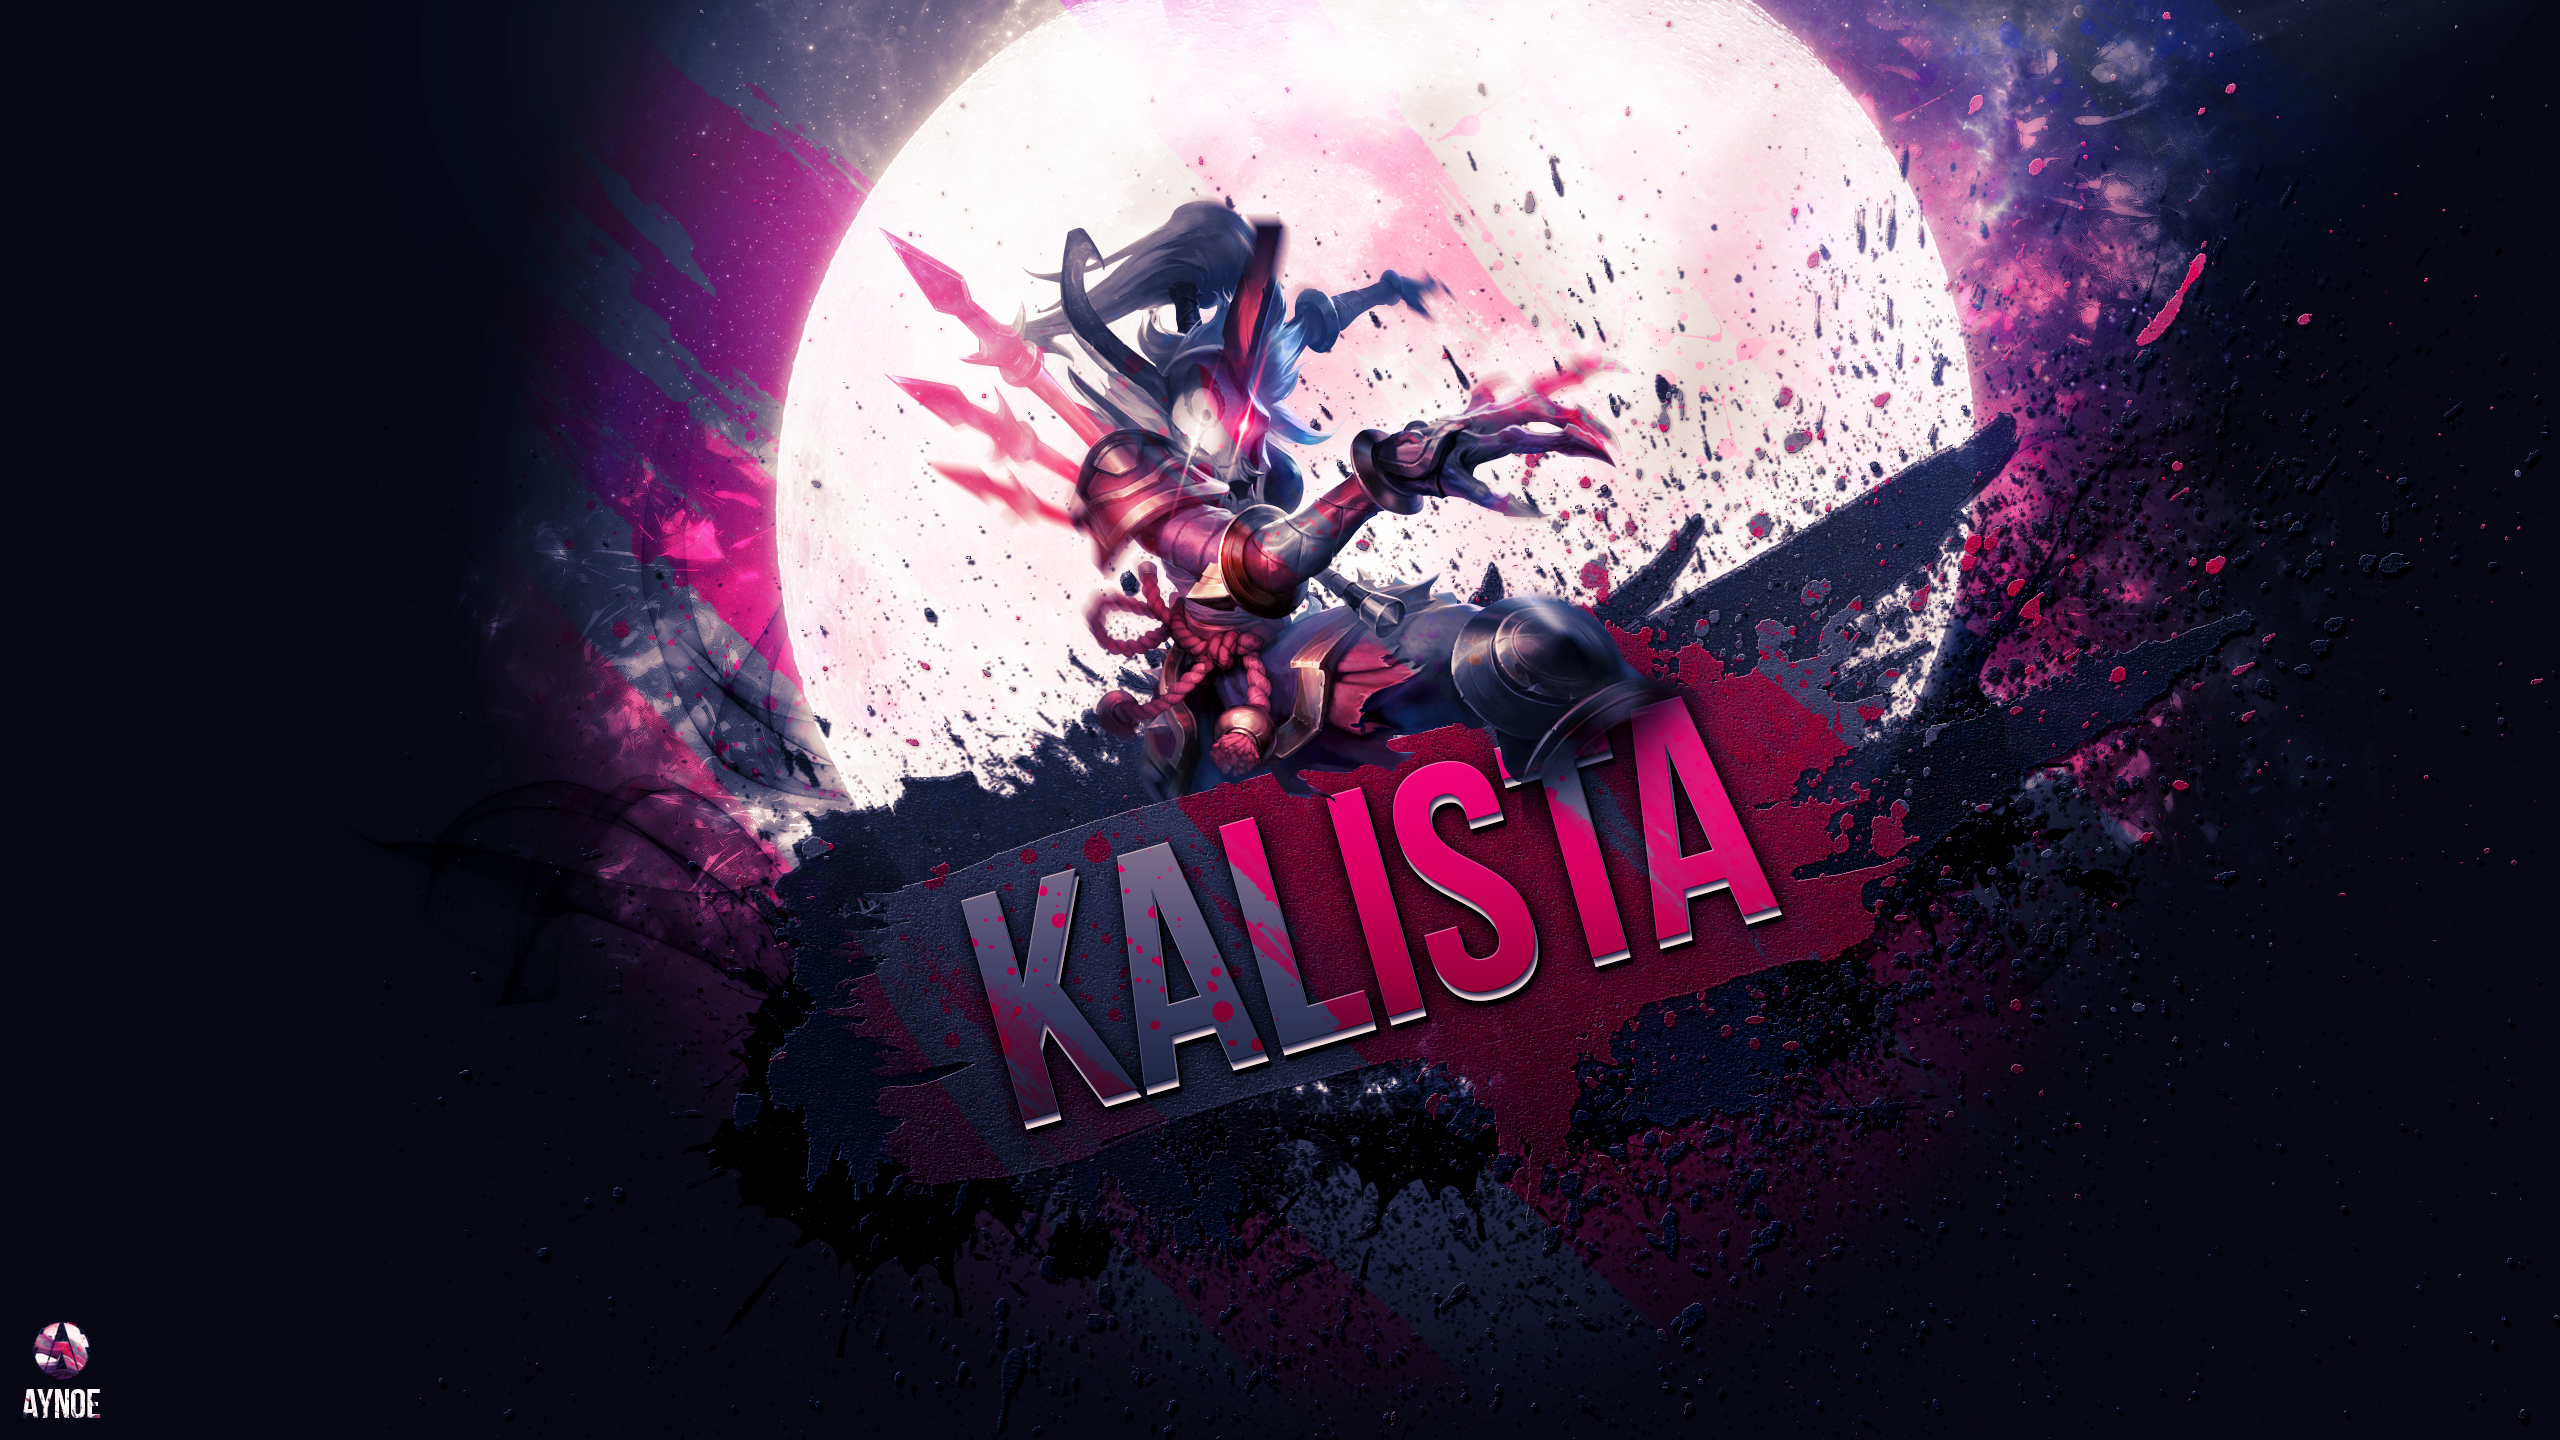 Kalista Background